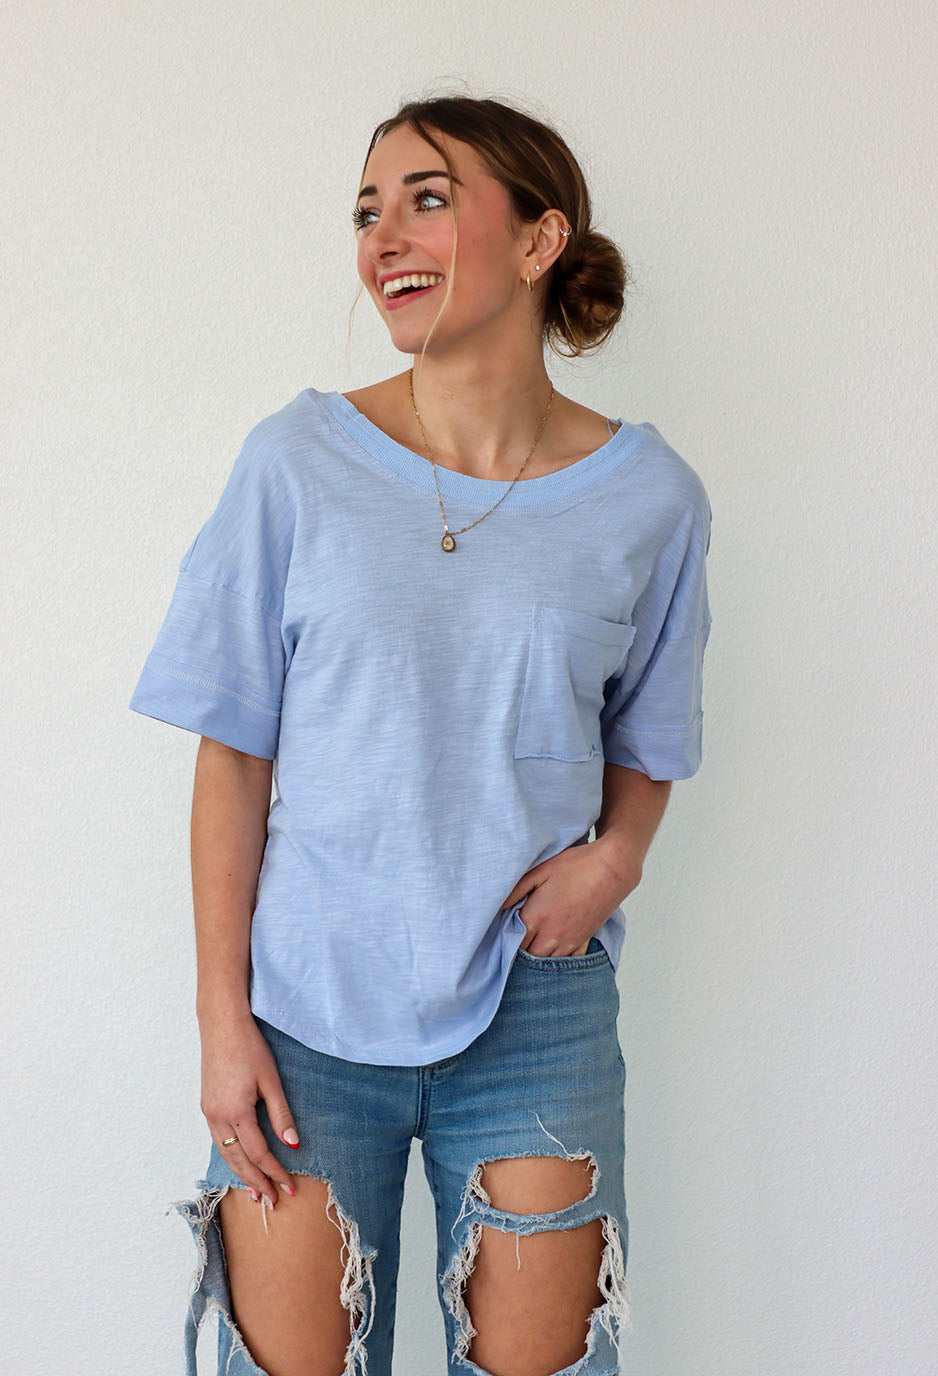 girl wearing a blue boxy t-shirt